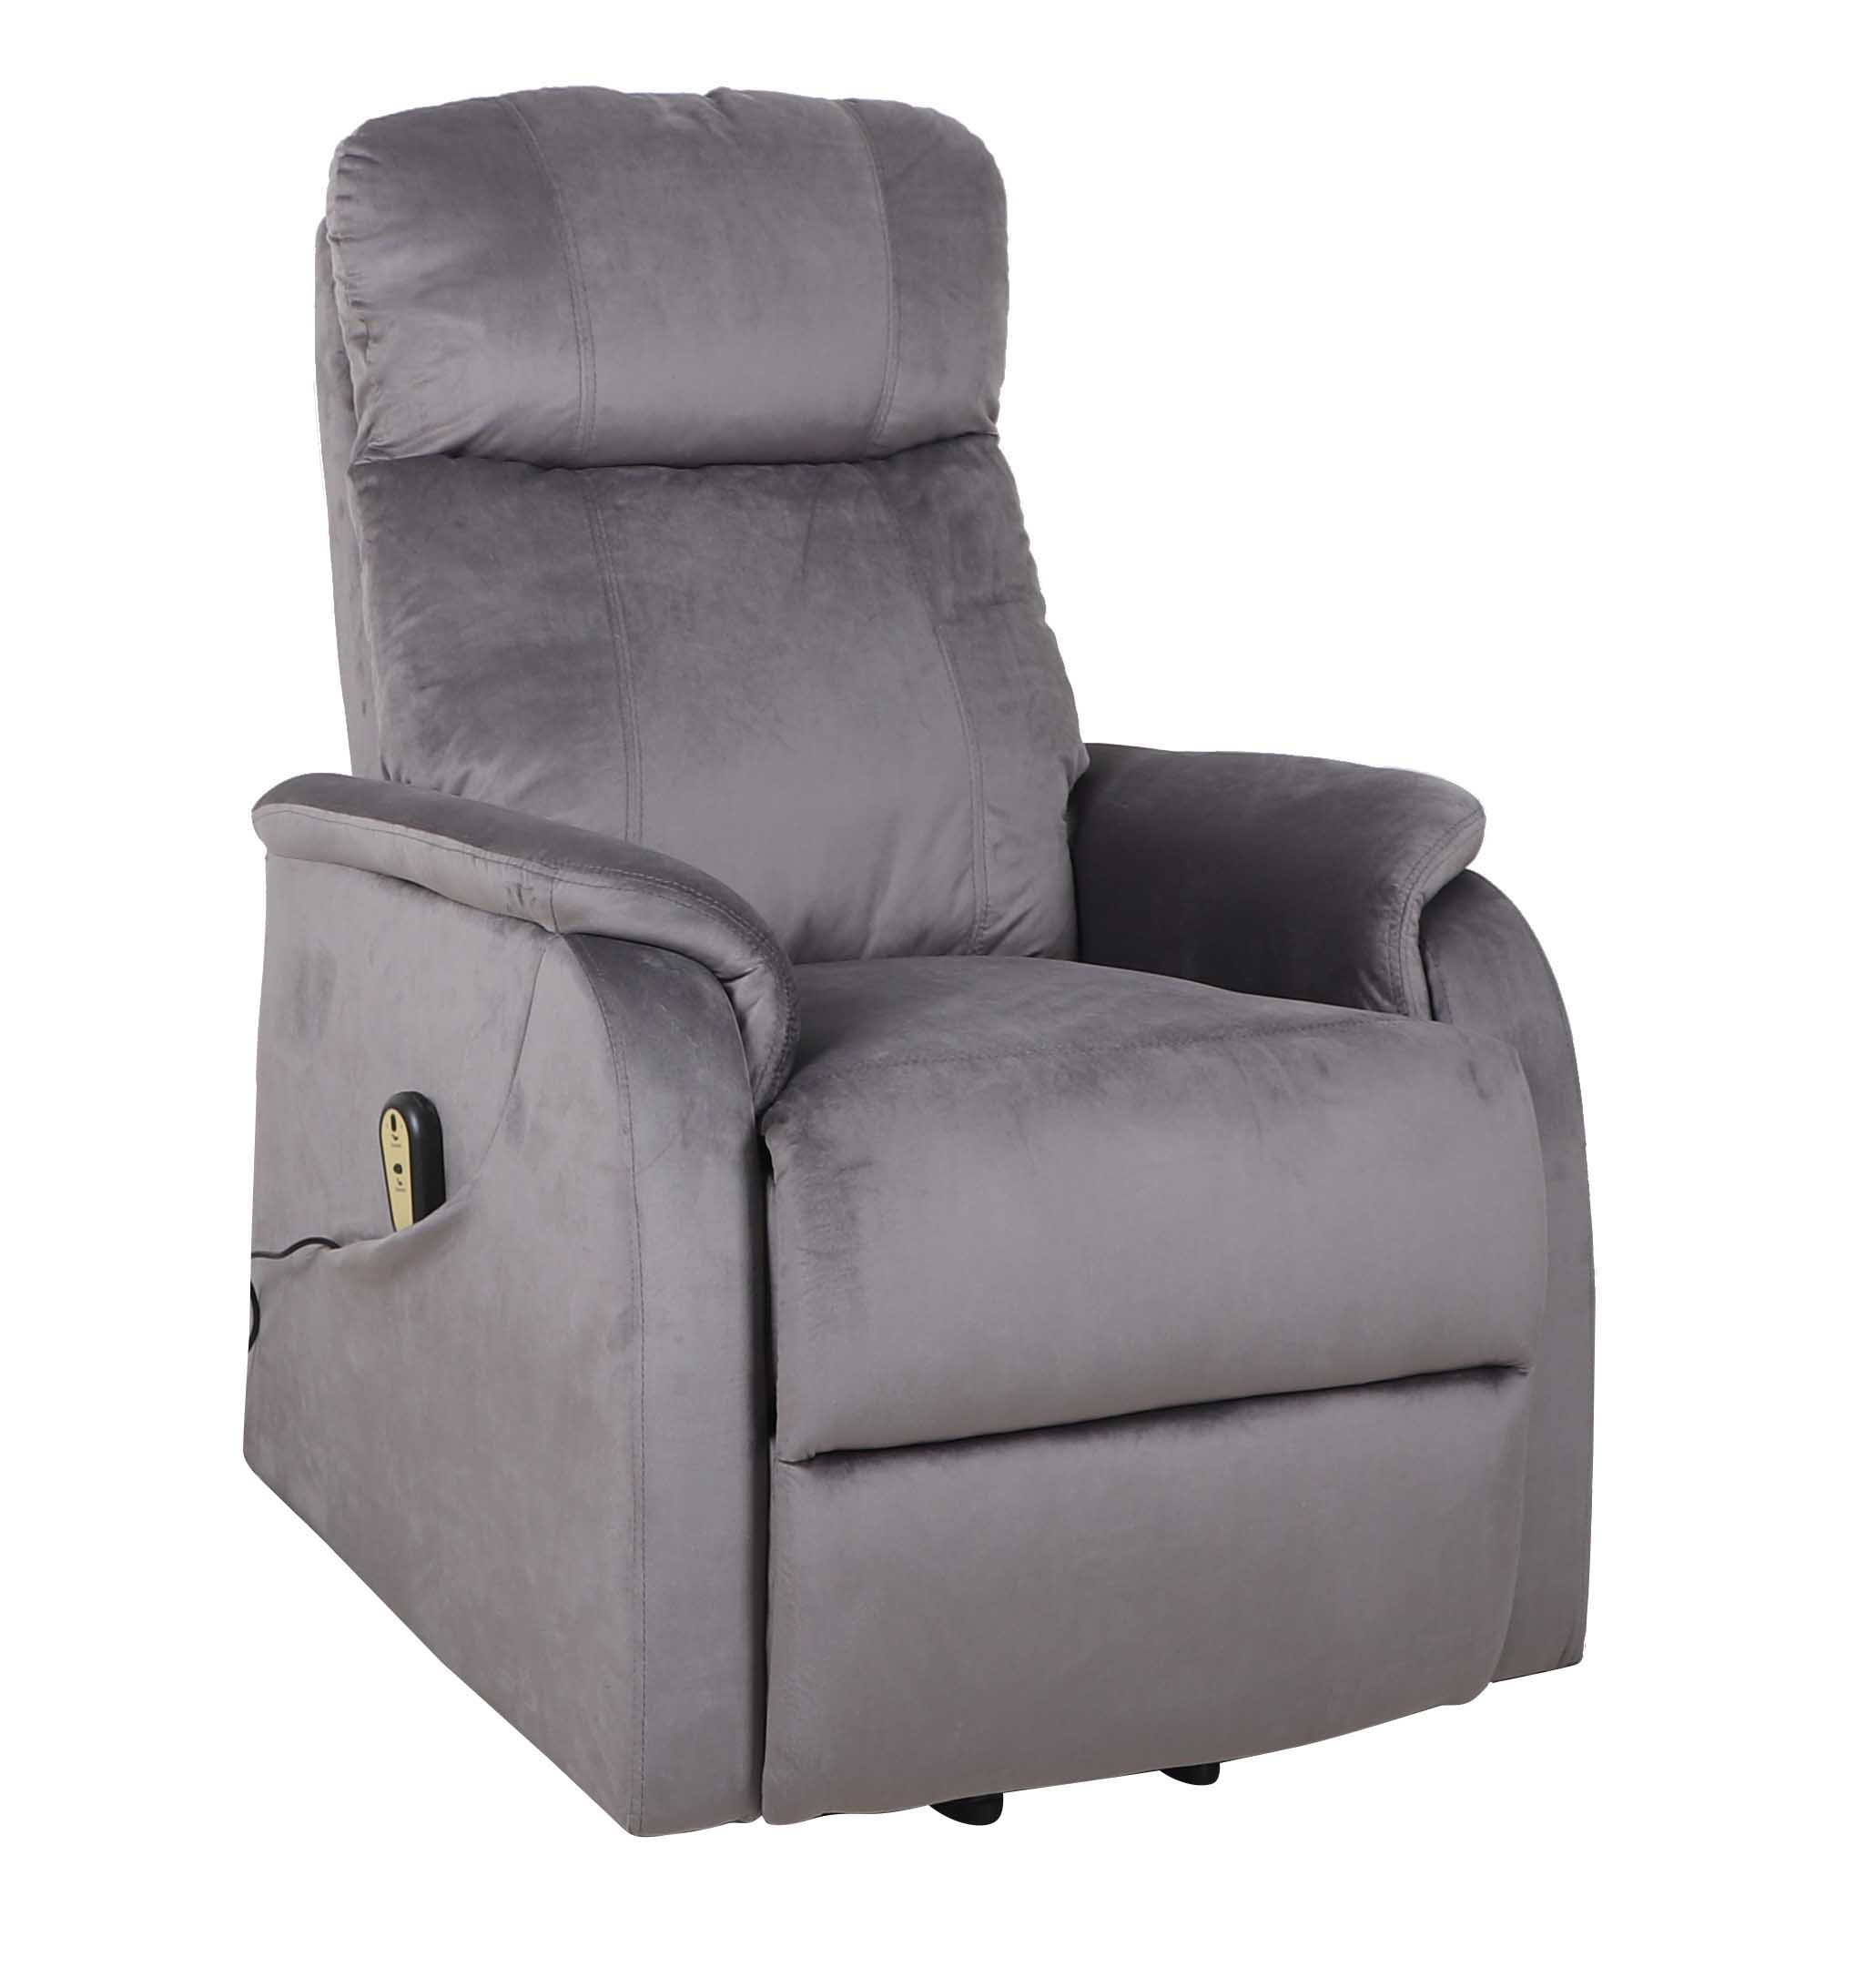 Fotel wypoczynkowy FR3-FX rozkładany elektrycznie (velvet) / szary